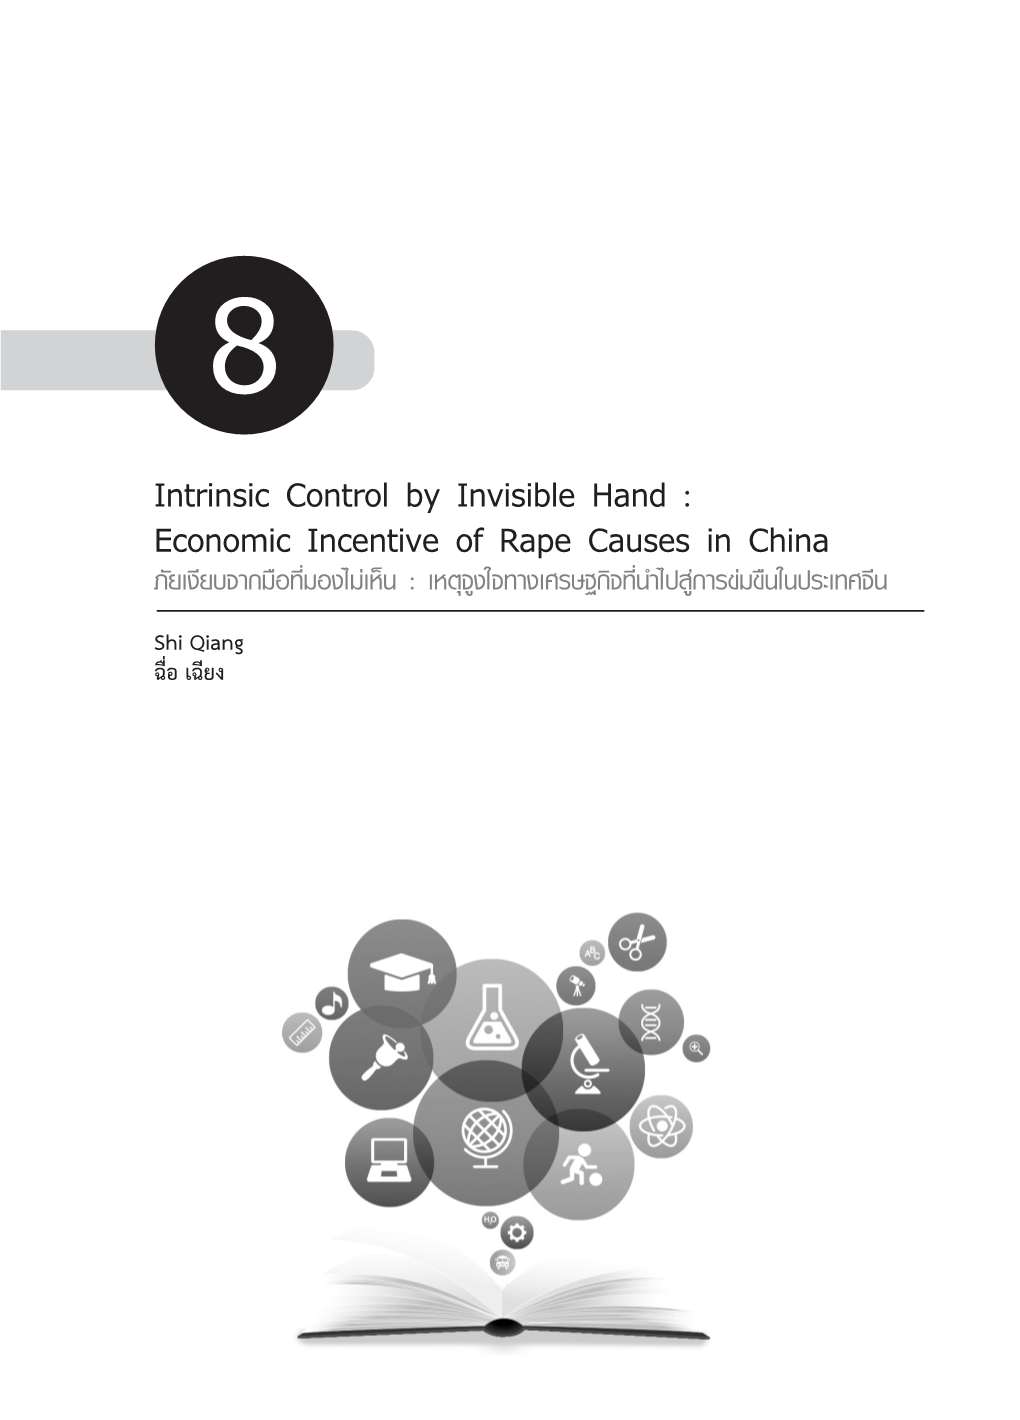 Economic Incentive of Rape Causes in China ภัยเงียบจากมือที่มองไม่เห็น : เหตุจูงใจทางเศรษฐกิจที่นำ�ไปสู่การข่มขืนในประเทศจีน